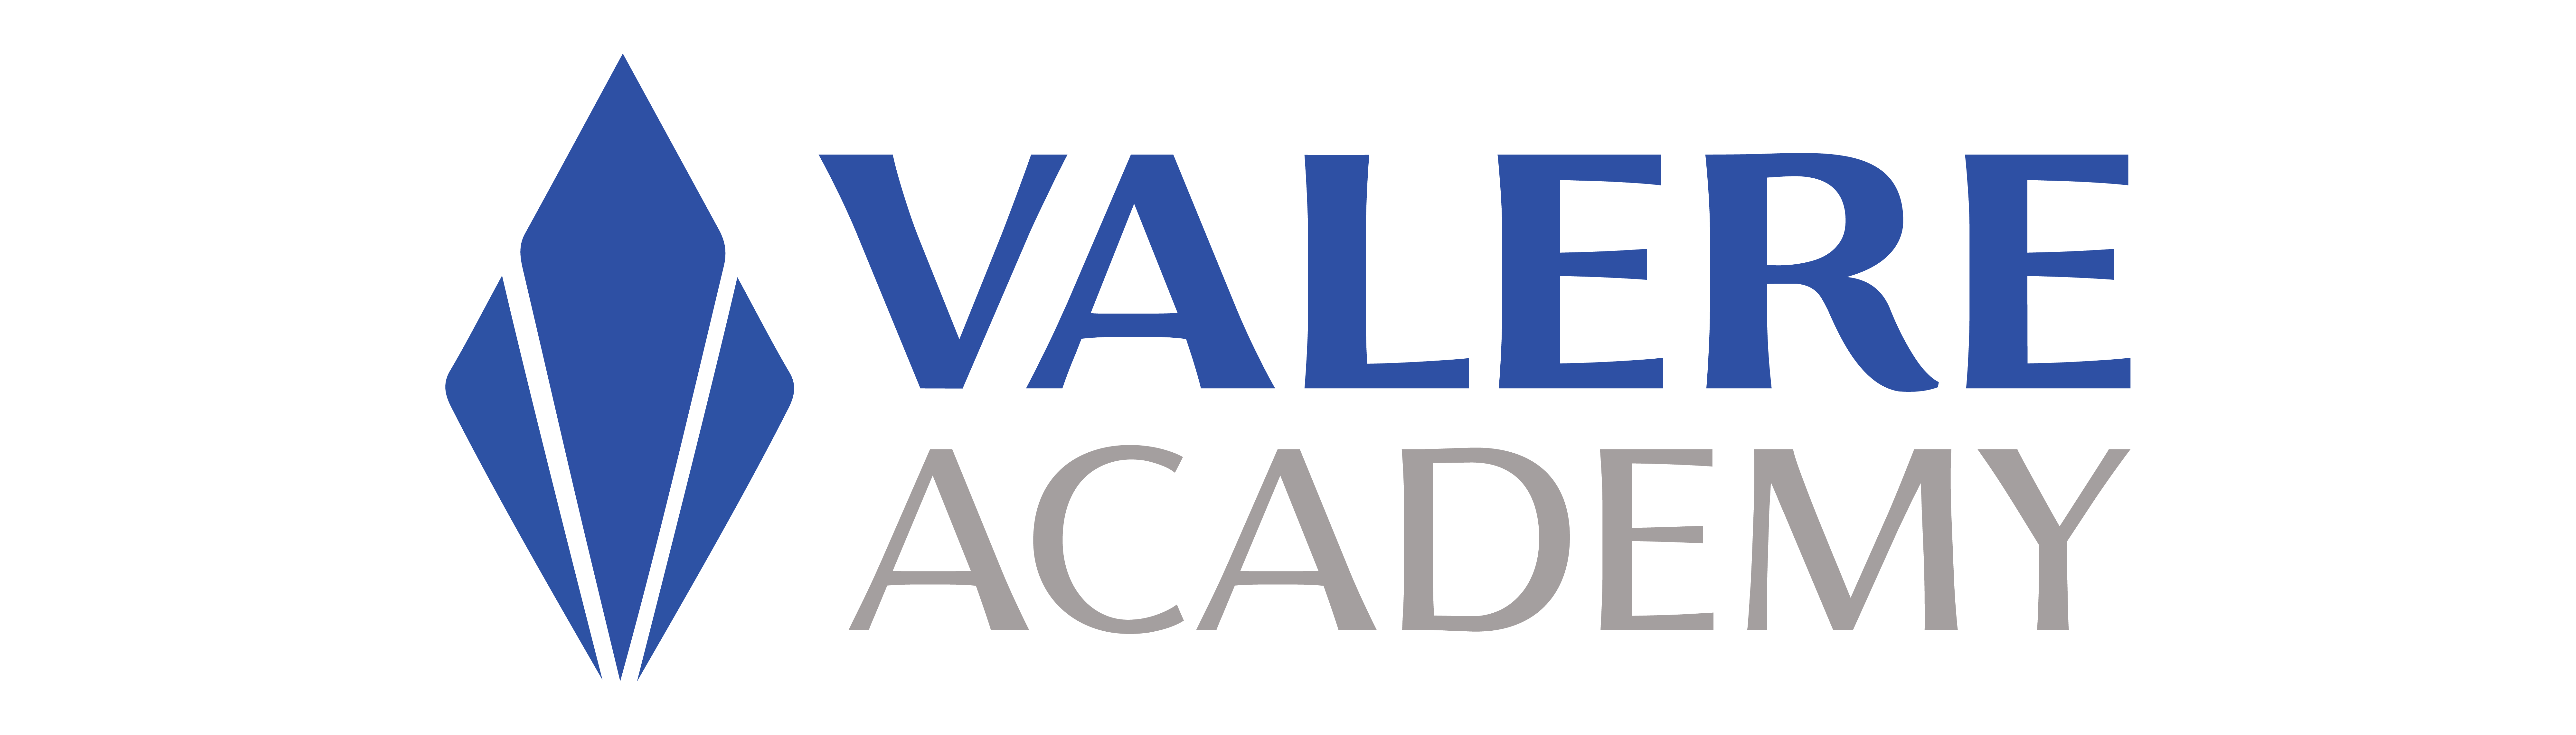 VALERE Academy